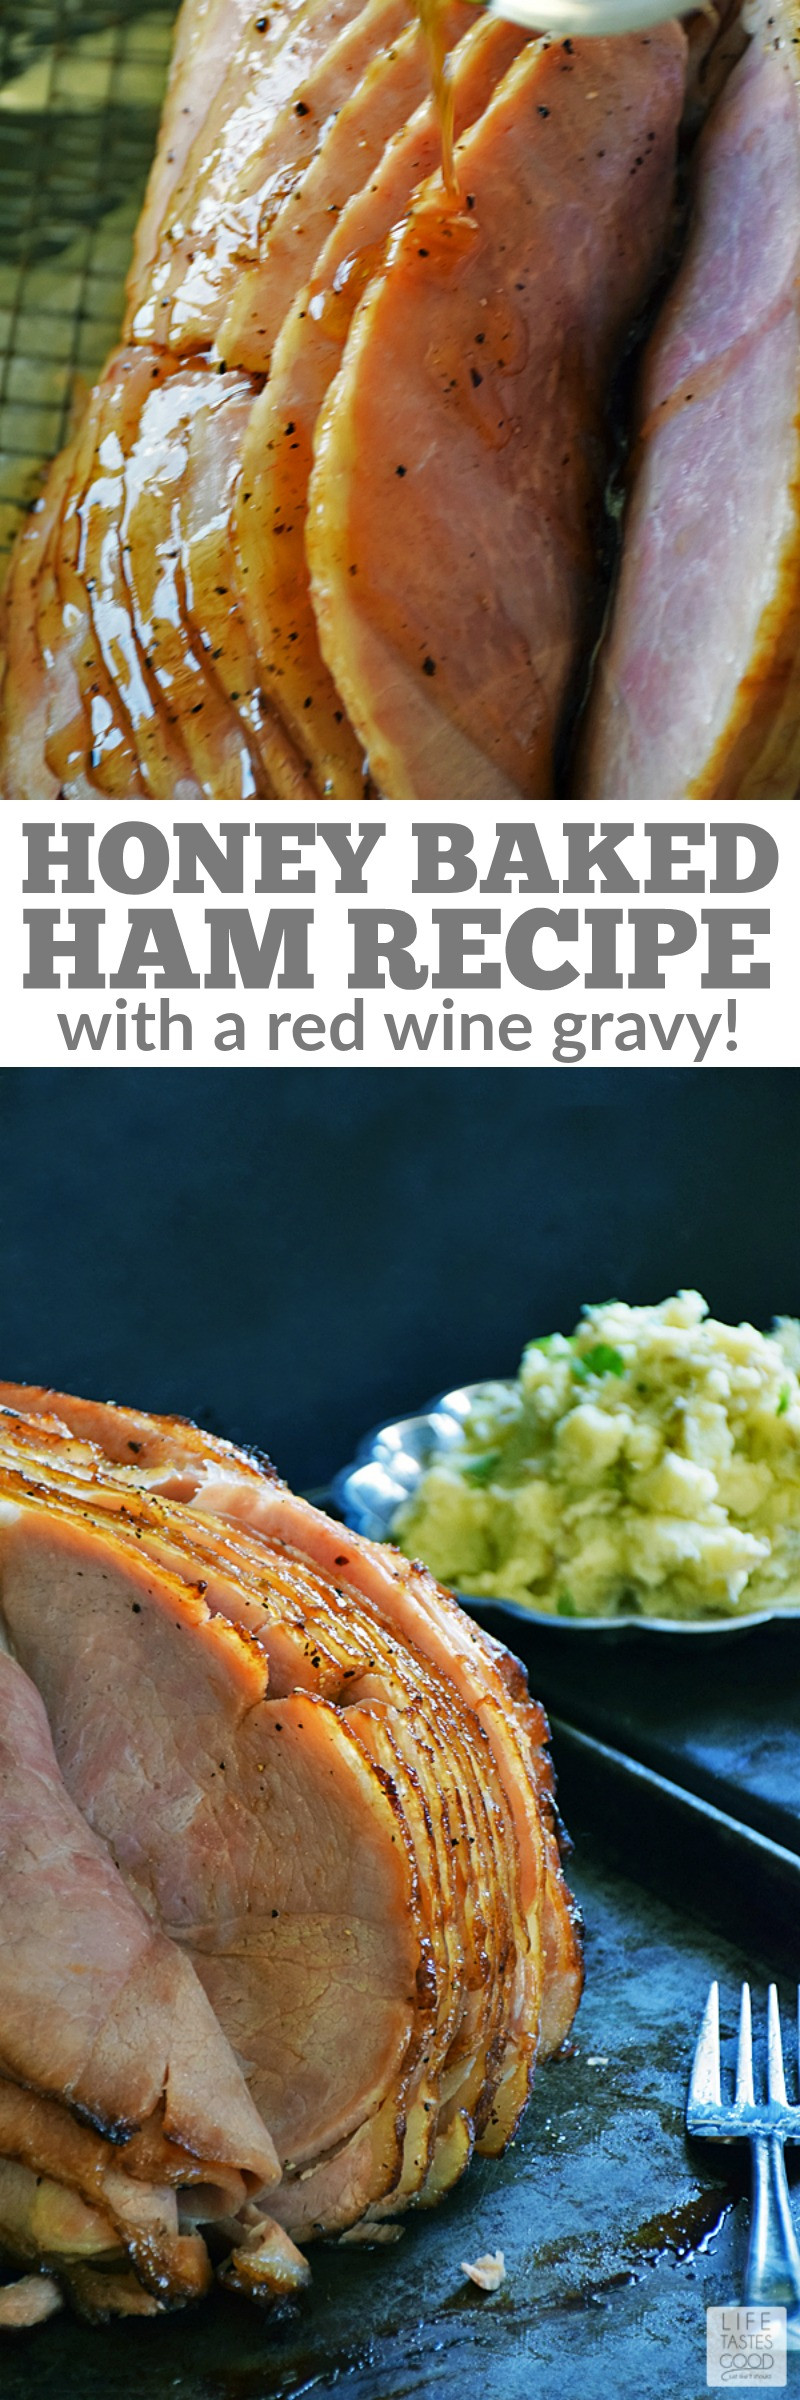 Honey Baked Ham Easter
 Honey Baked Ham Recipe